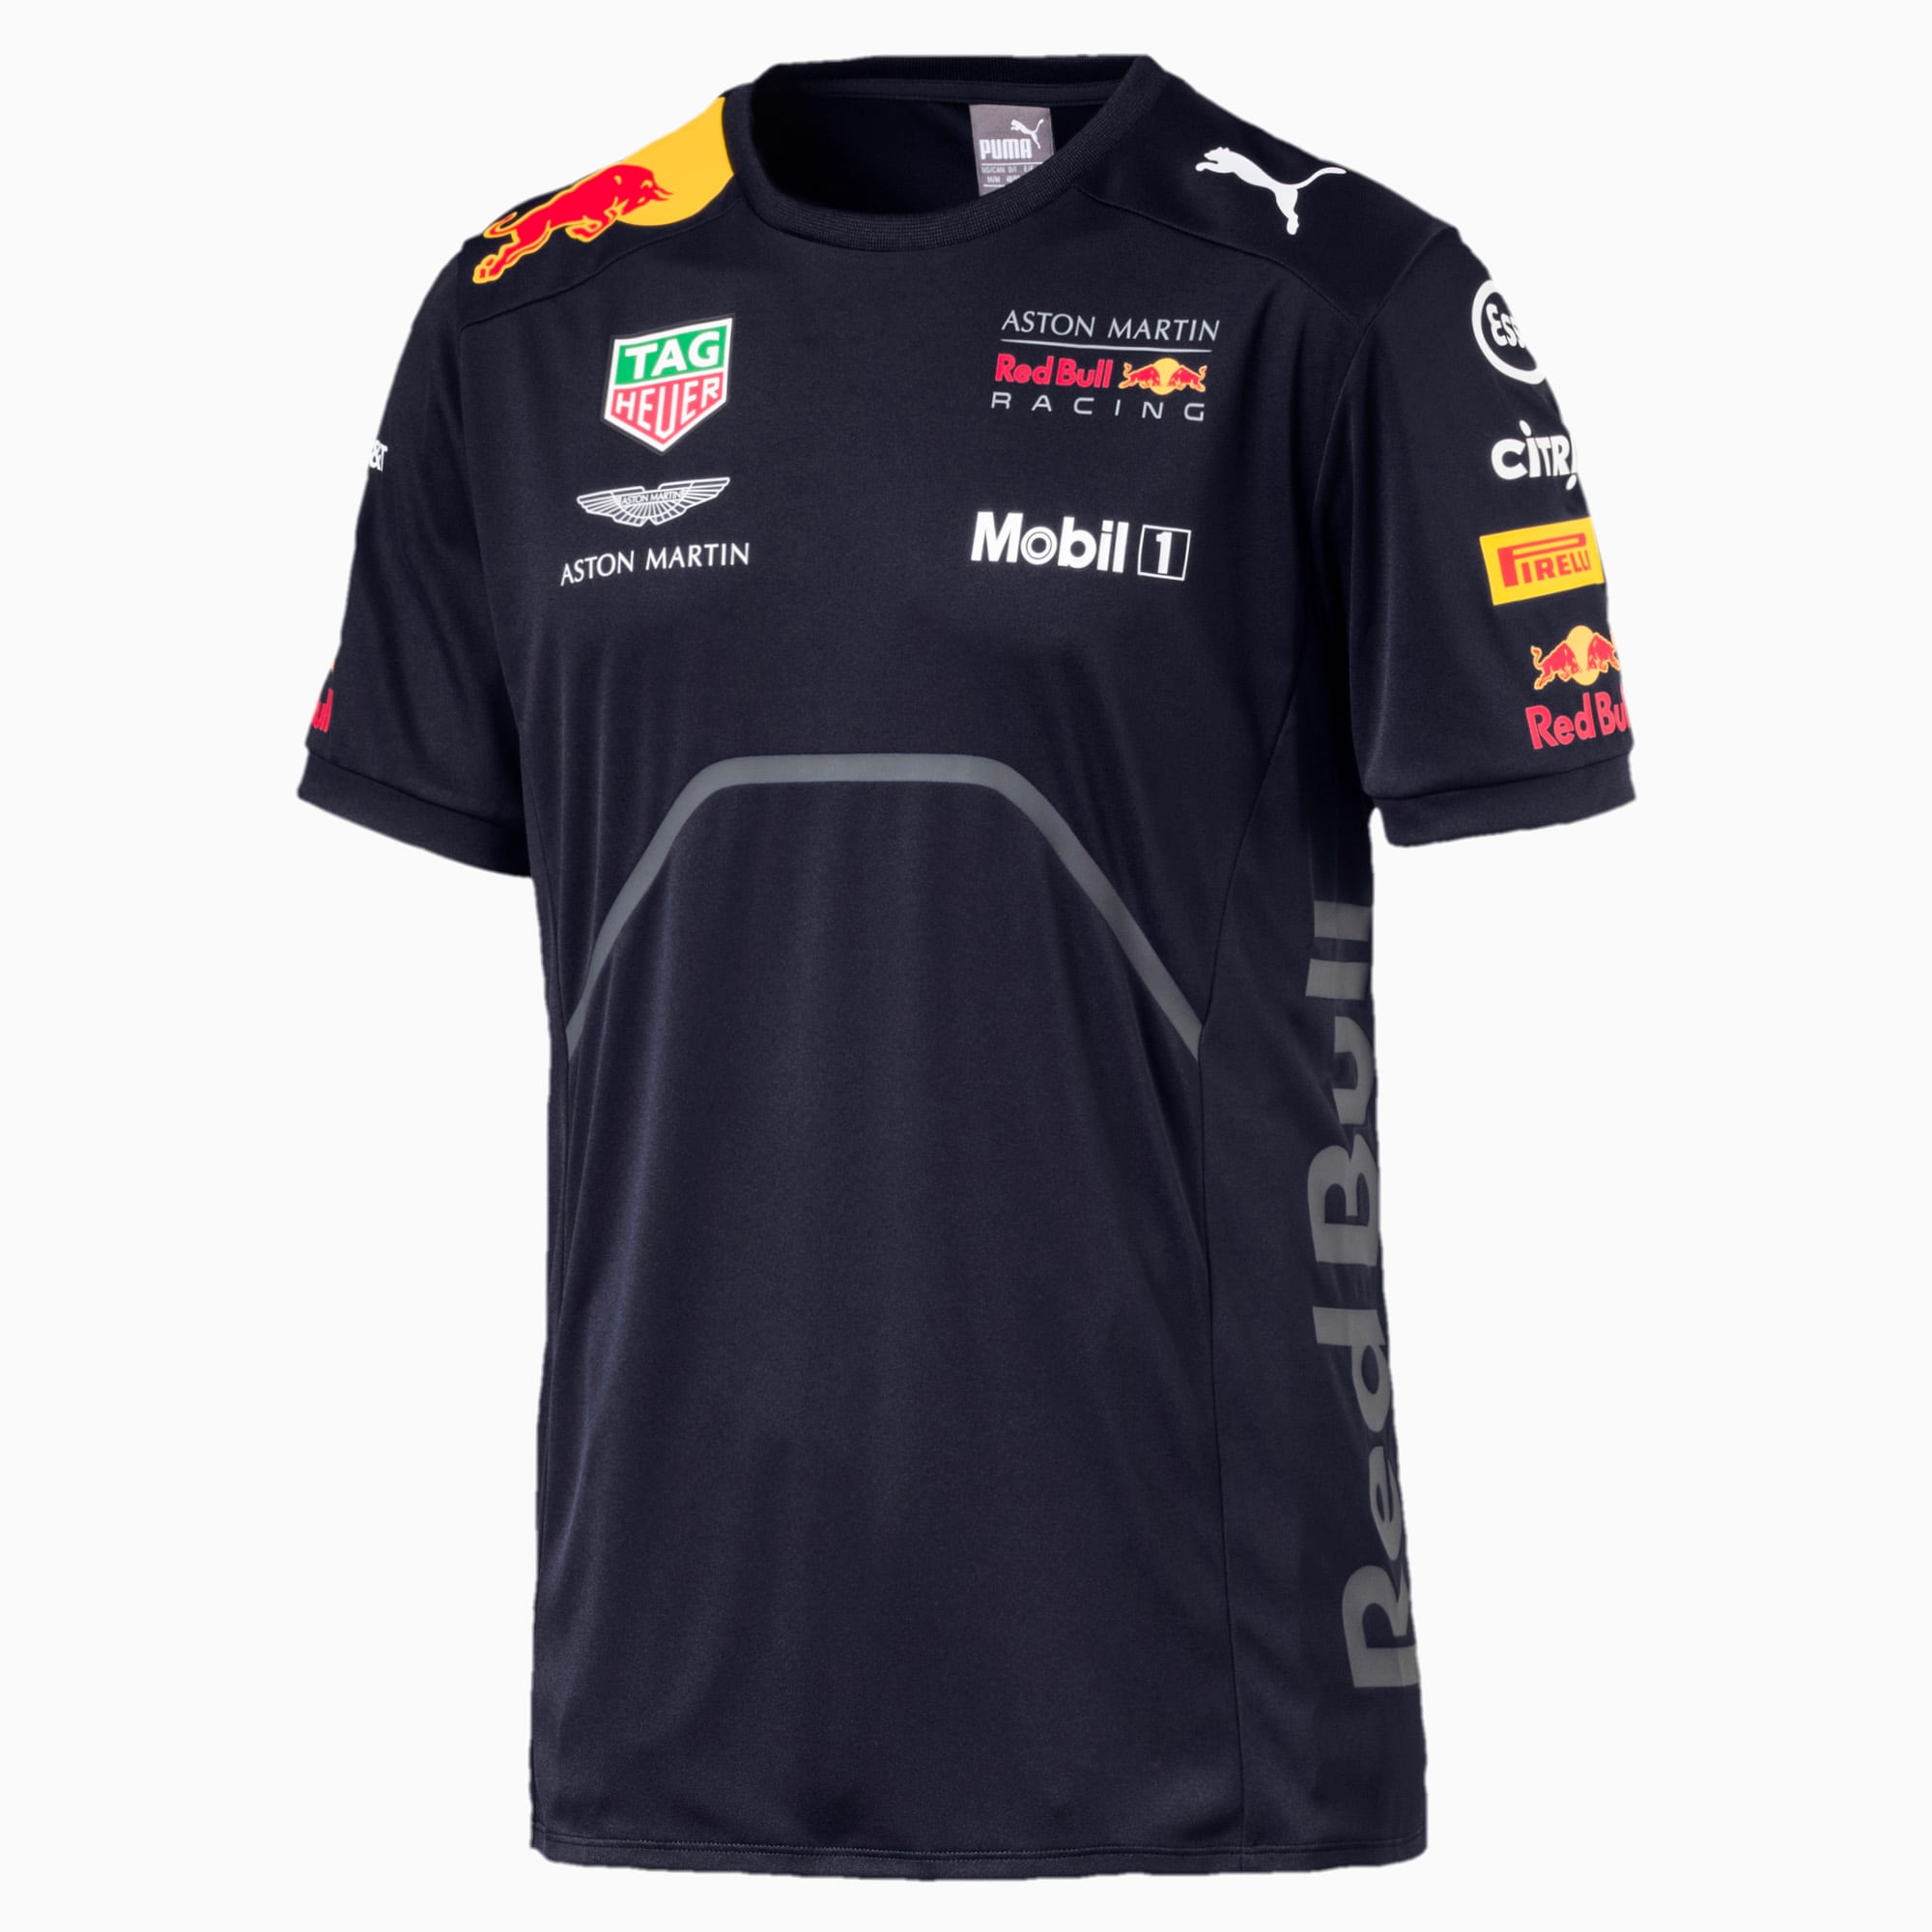 Camiseta del equipo Red Bull Racing para hombre | PUMA EE. UU.